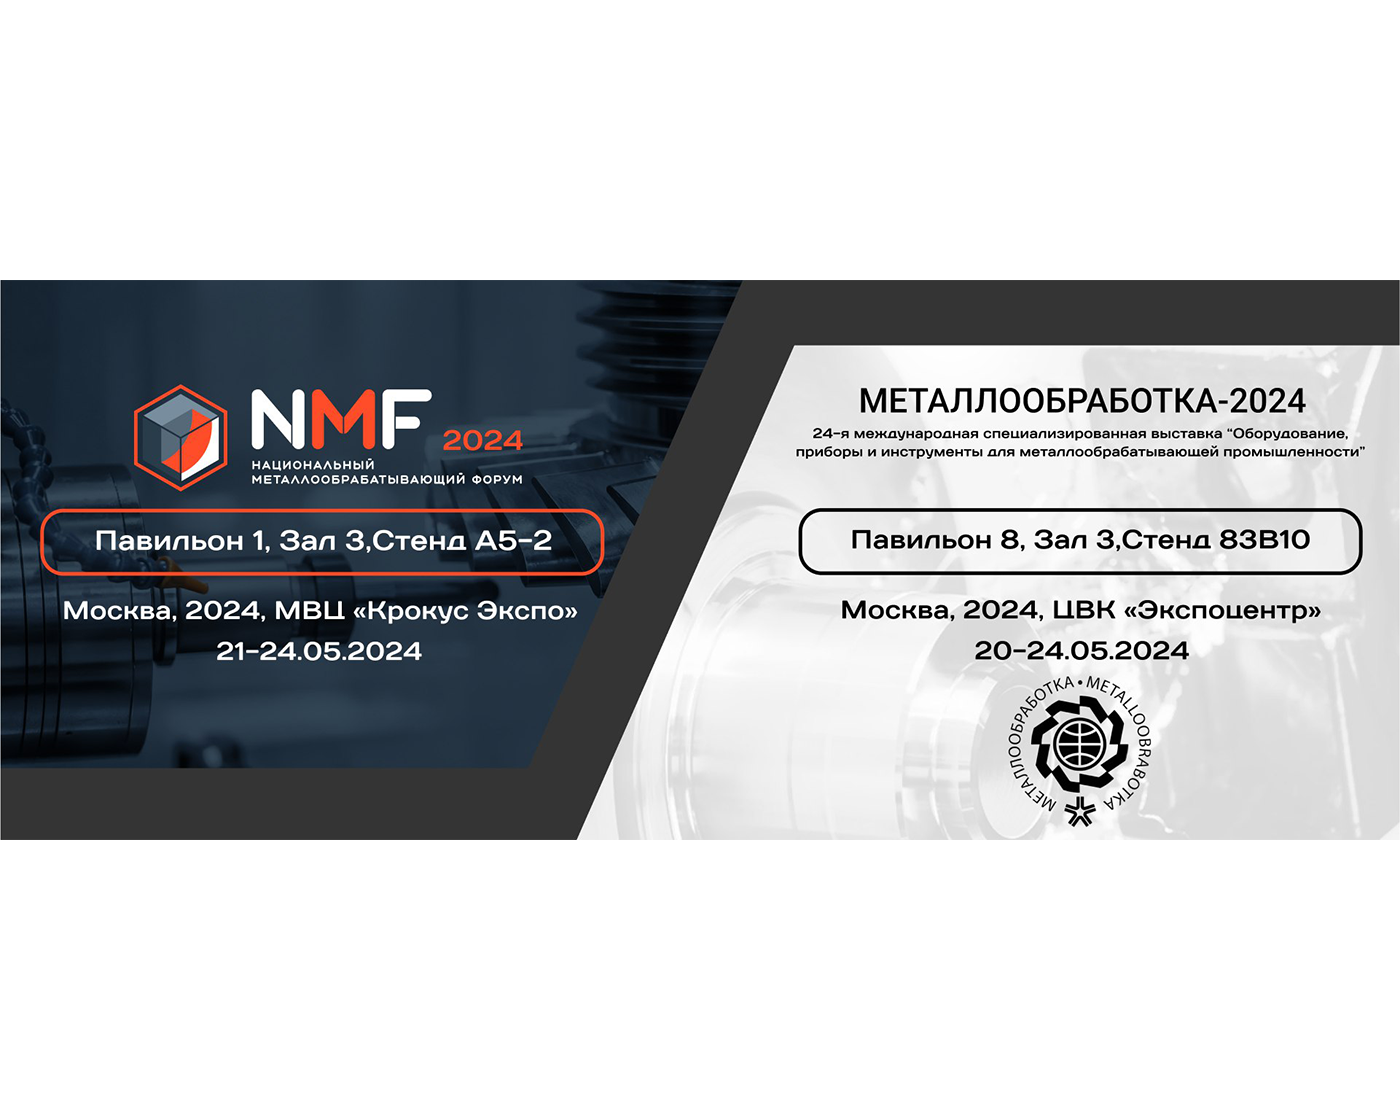 ООО «Сервис Плюс» приглашает на выставку Металлообработка 2024 и Национальный Металлообрабатывающий Форум NMF 2024